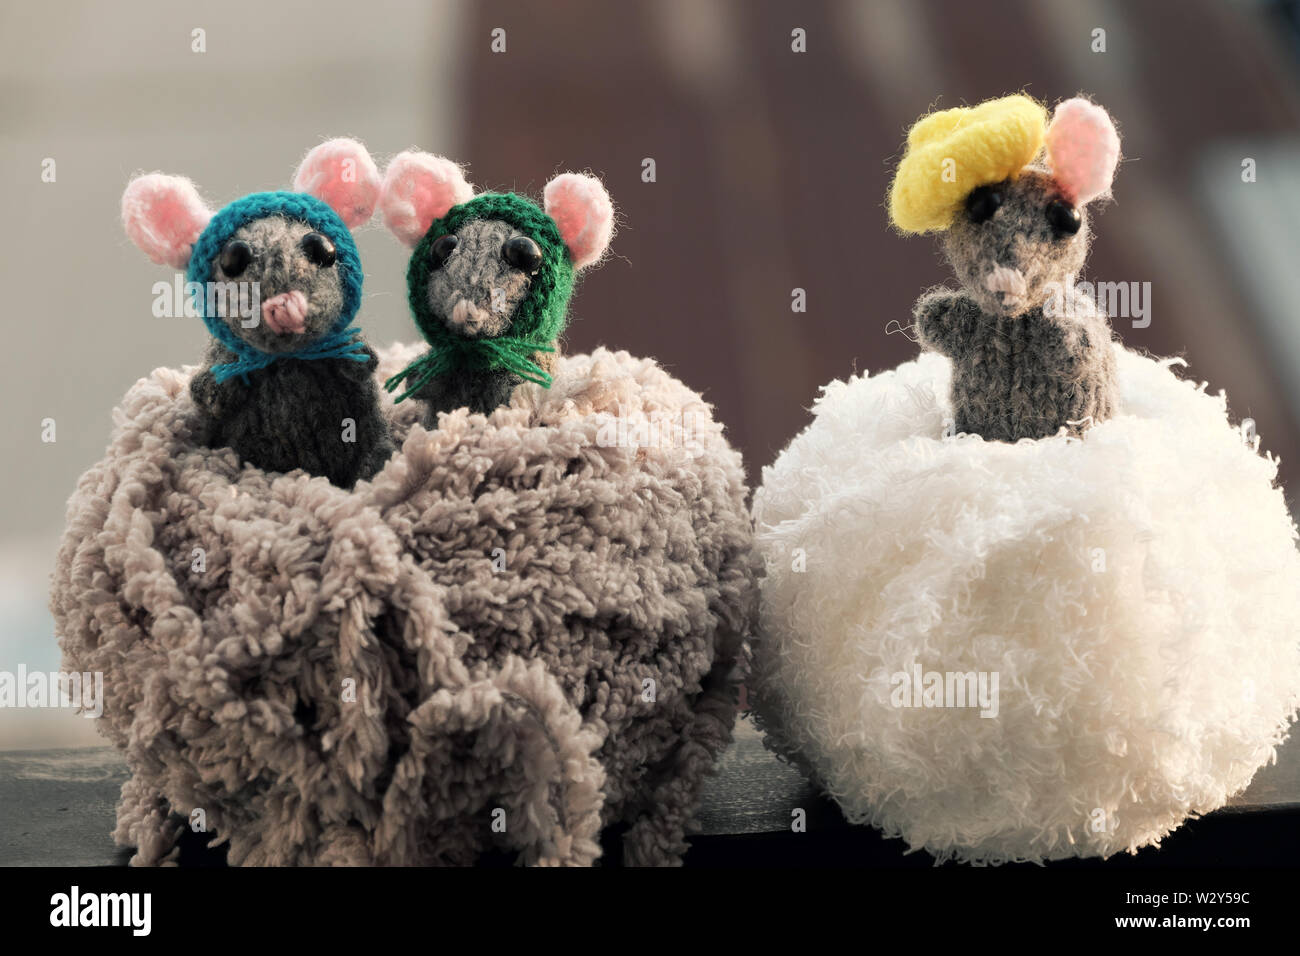 Amazing close up de tir produit artisanal,souris tricoté en pelote de laine, l'arrière-plan flou, de l'artisanat pour les rats beau cadeau ou des jouets pour enfants Banque D'Images